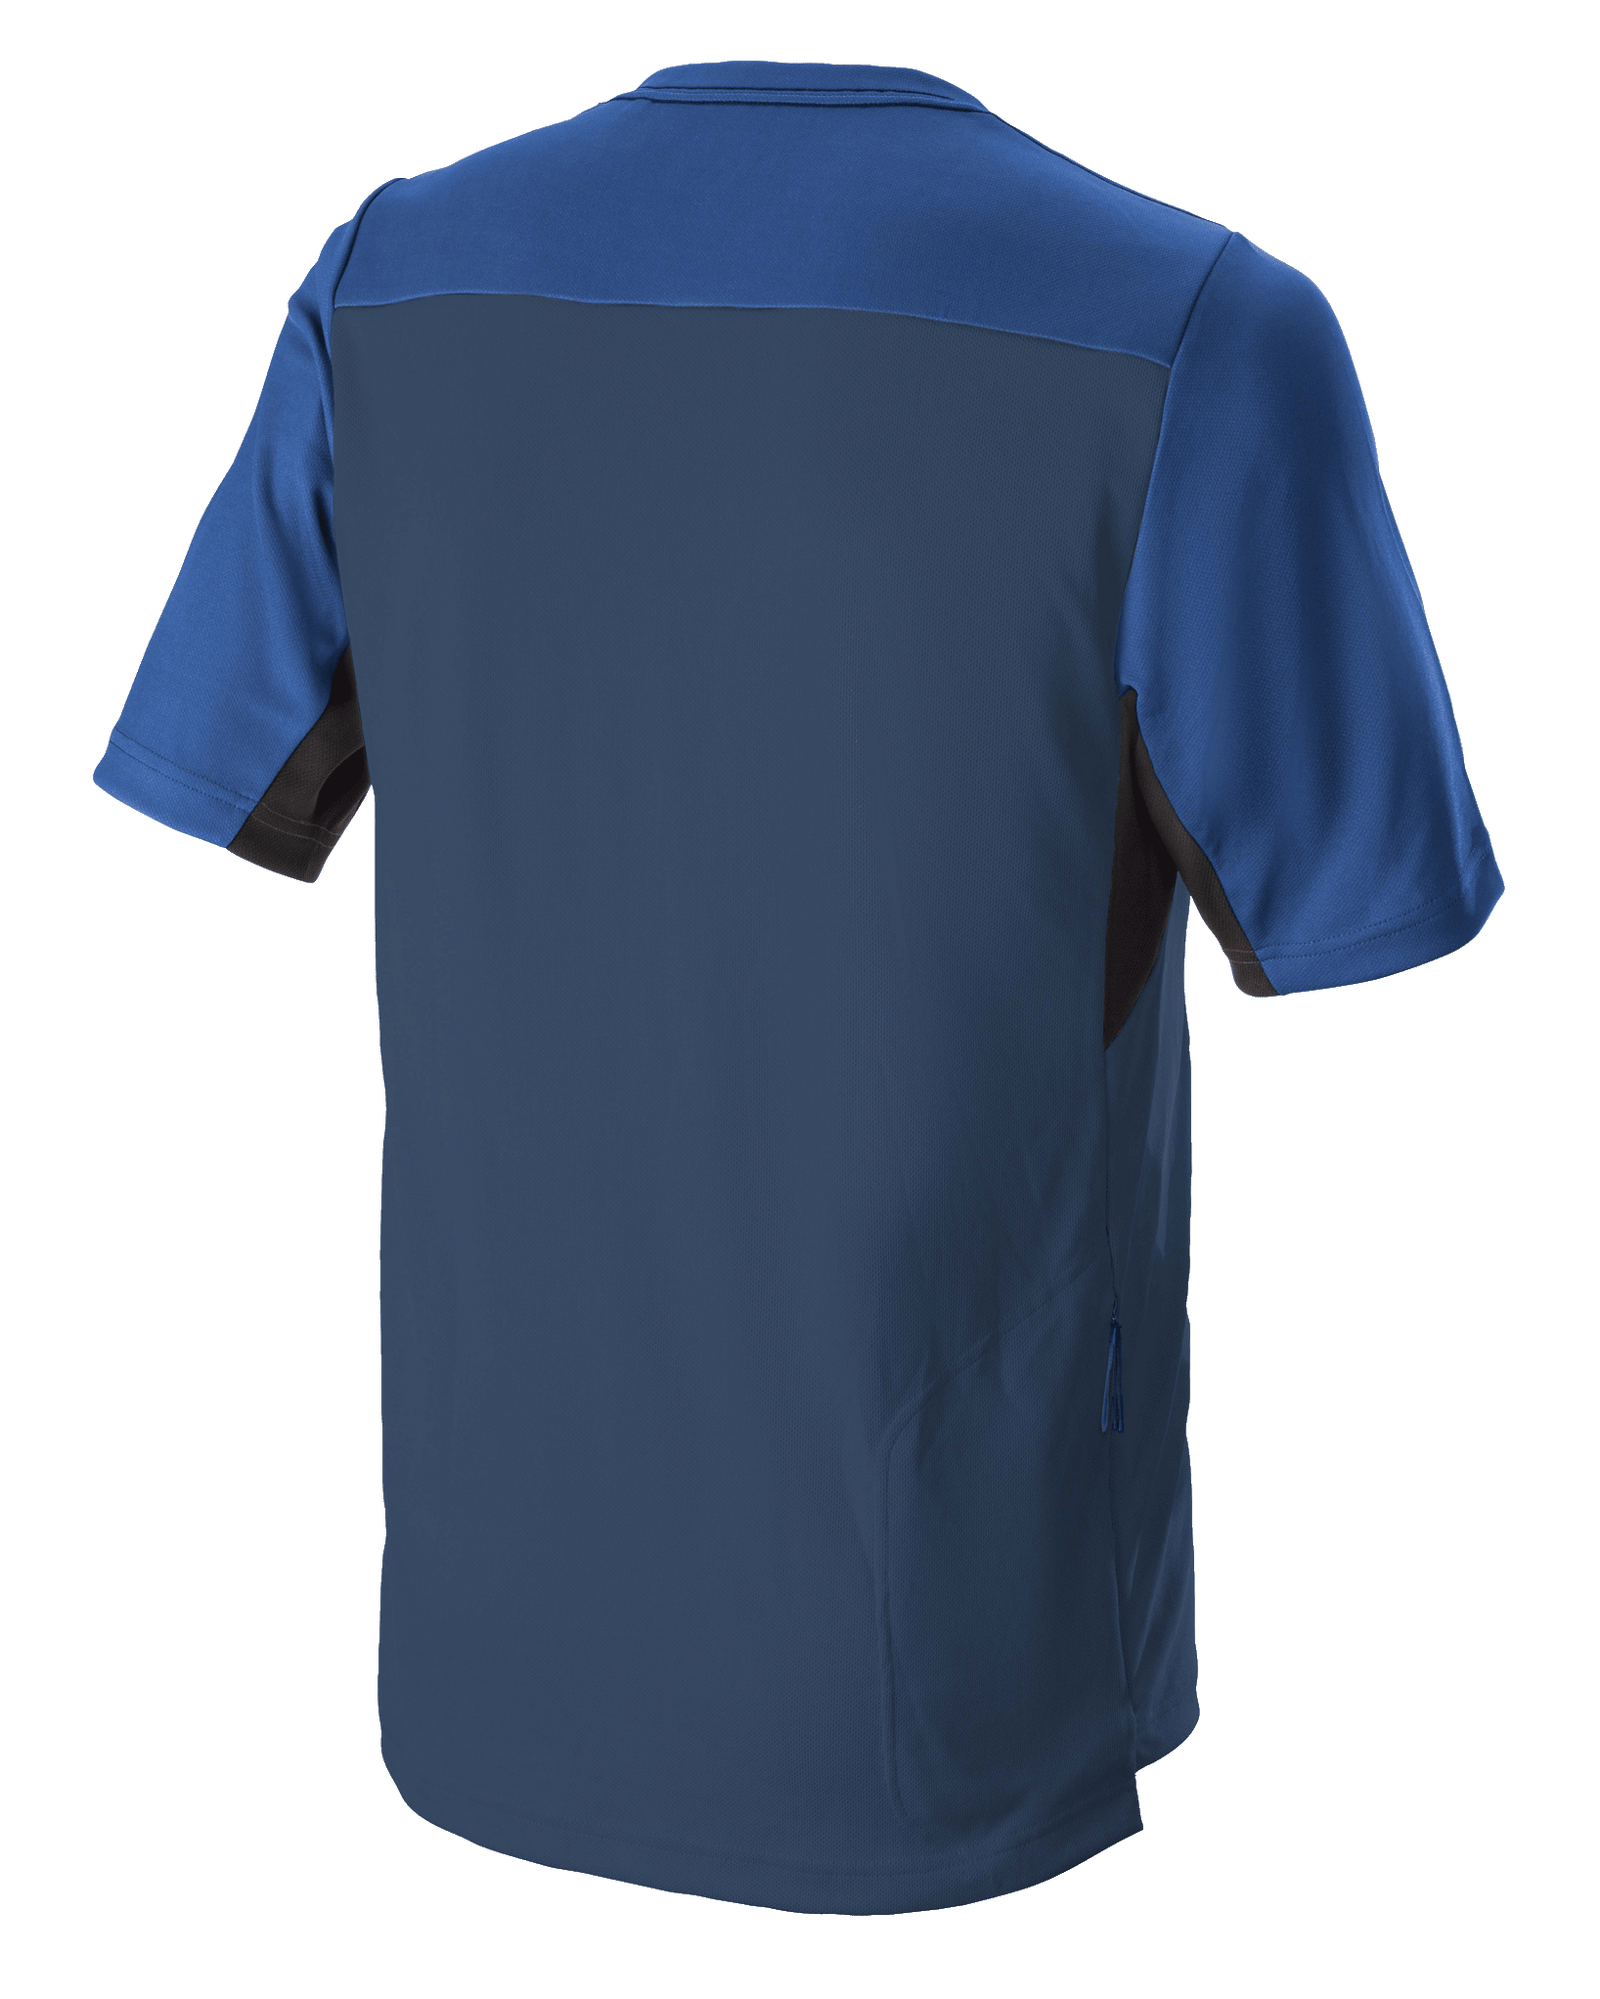 Drop 6 V2 Jersey - Short Sleeve